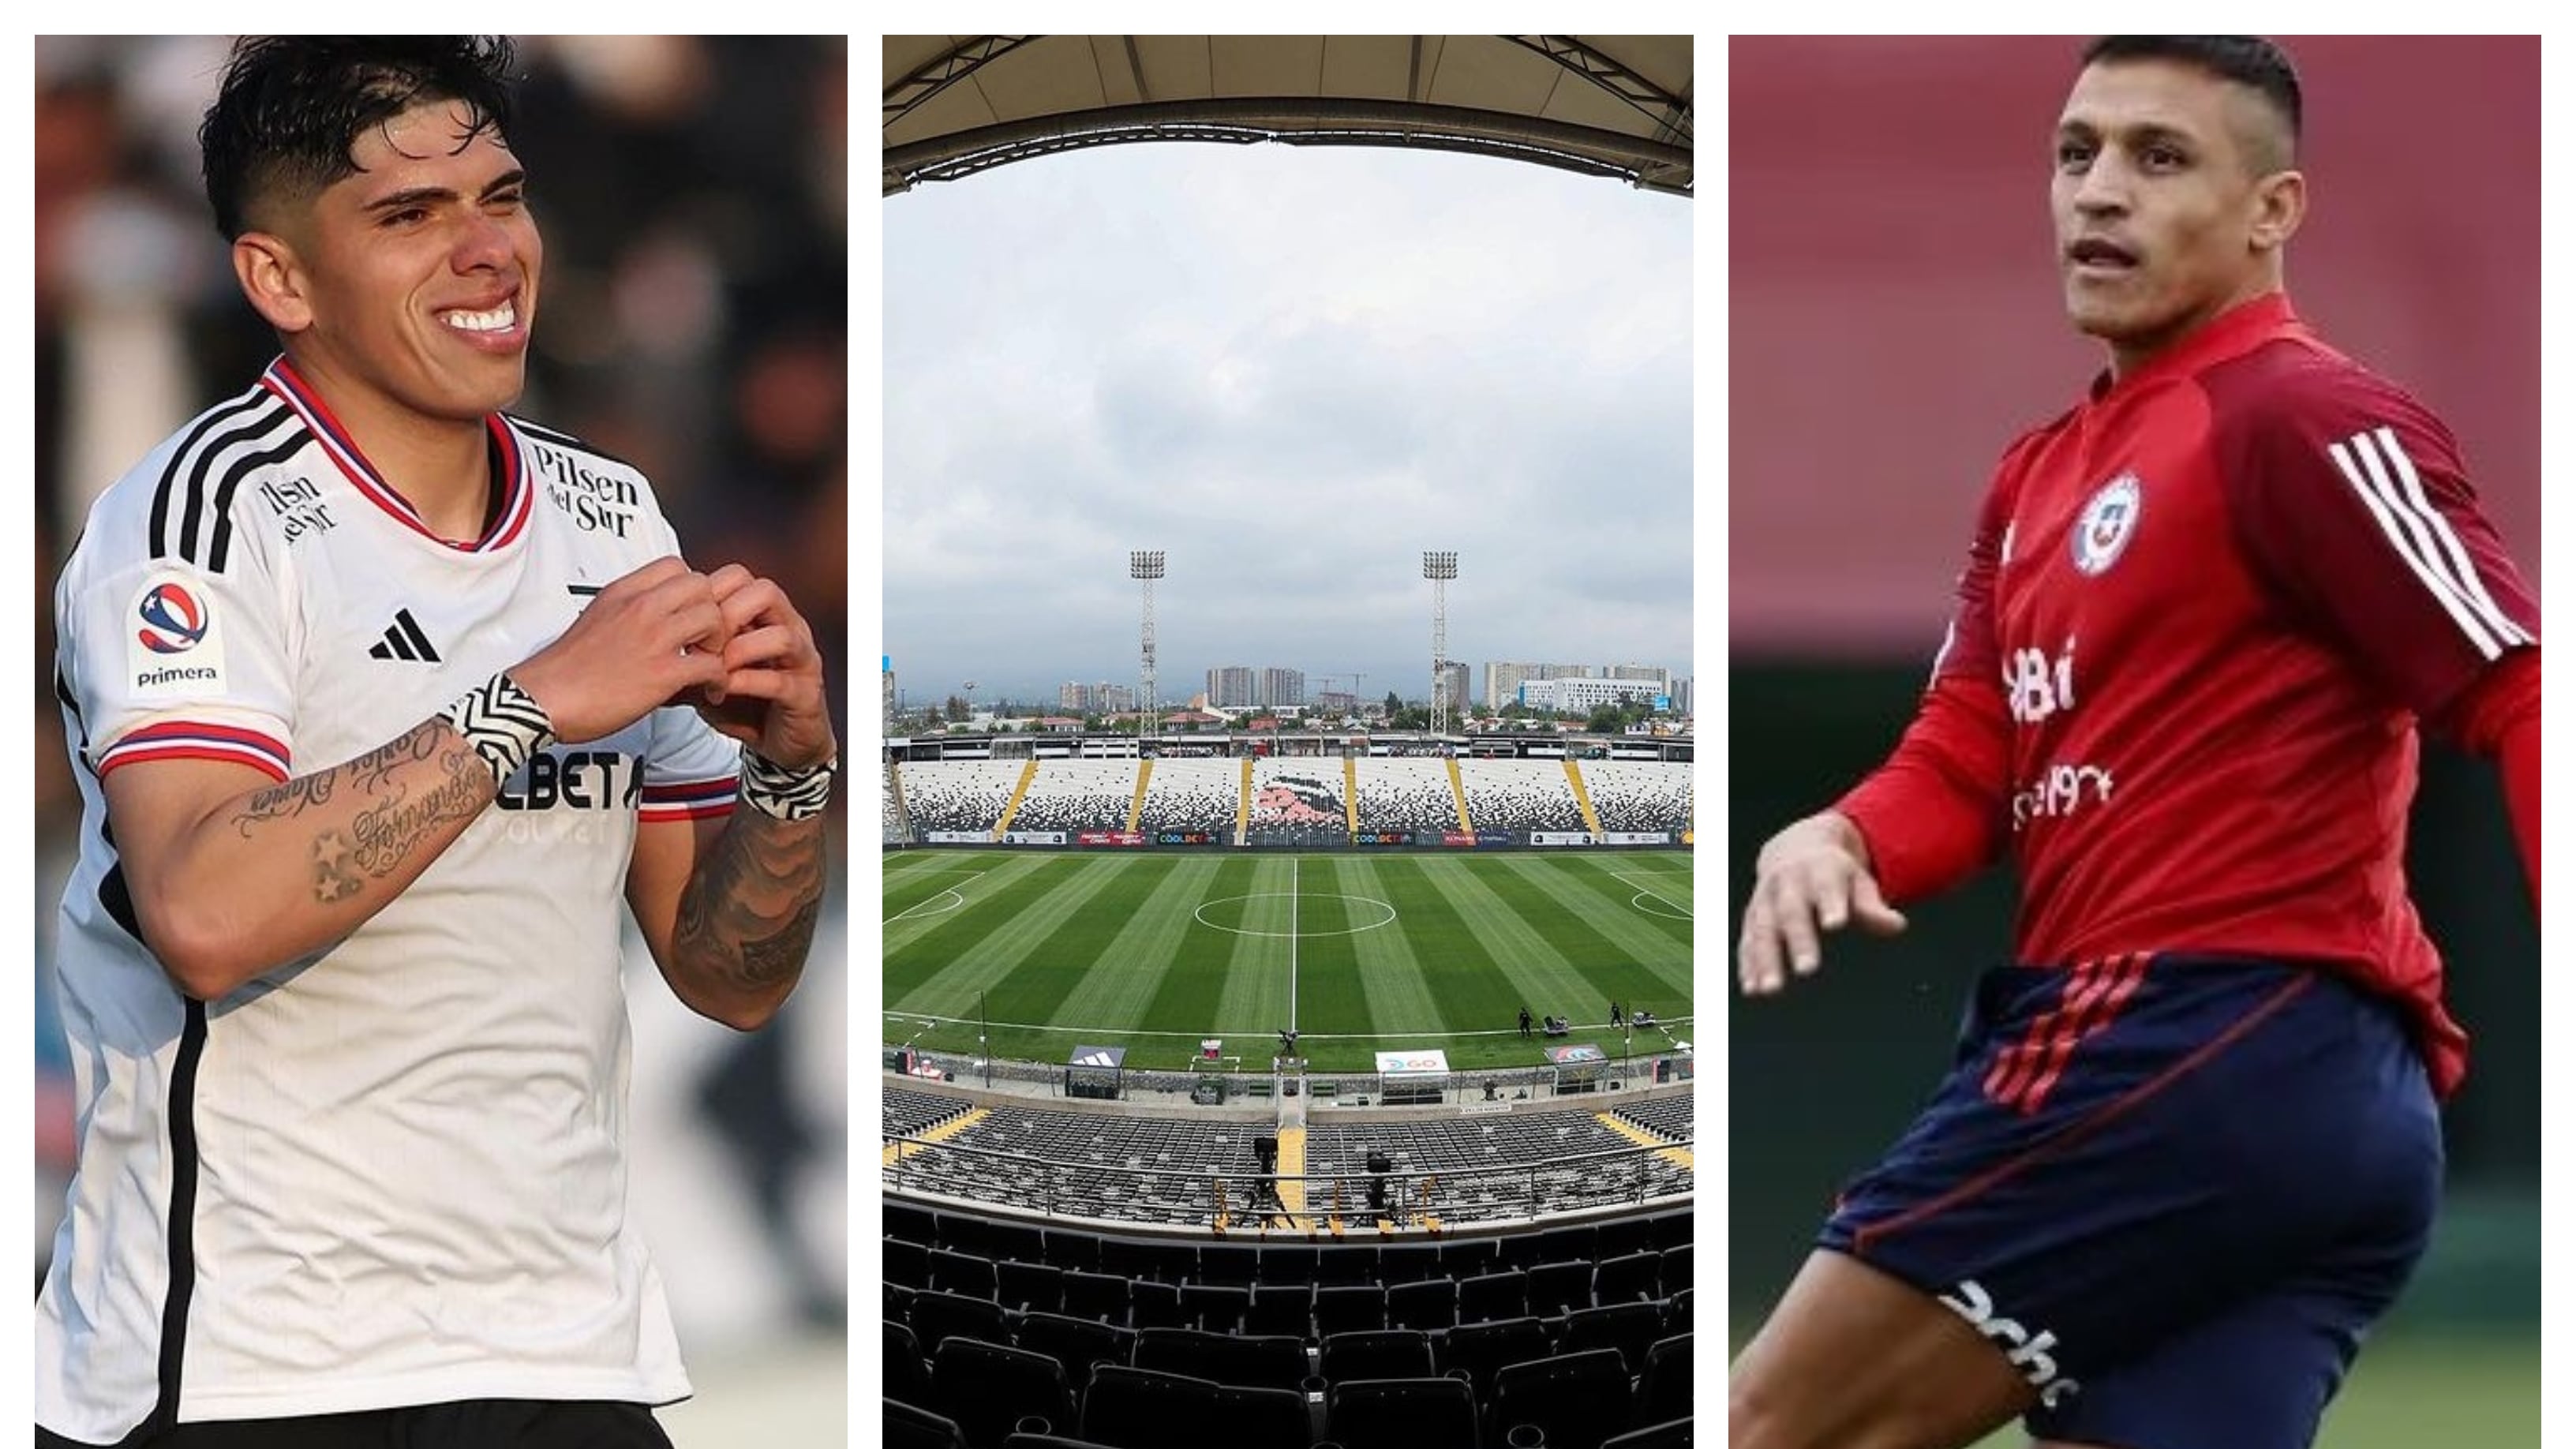 El futbolista de Colo Colo desmintió este jueves la denuncia que hizo Alexis Sánchez respecto de las deficitarias instalaciones del reducto de Macul.